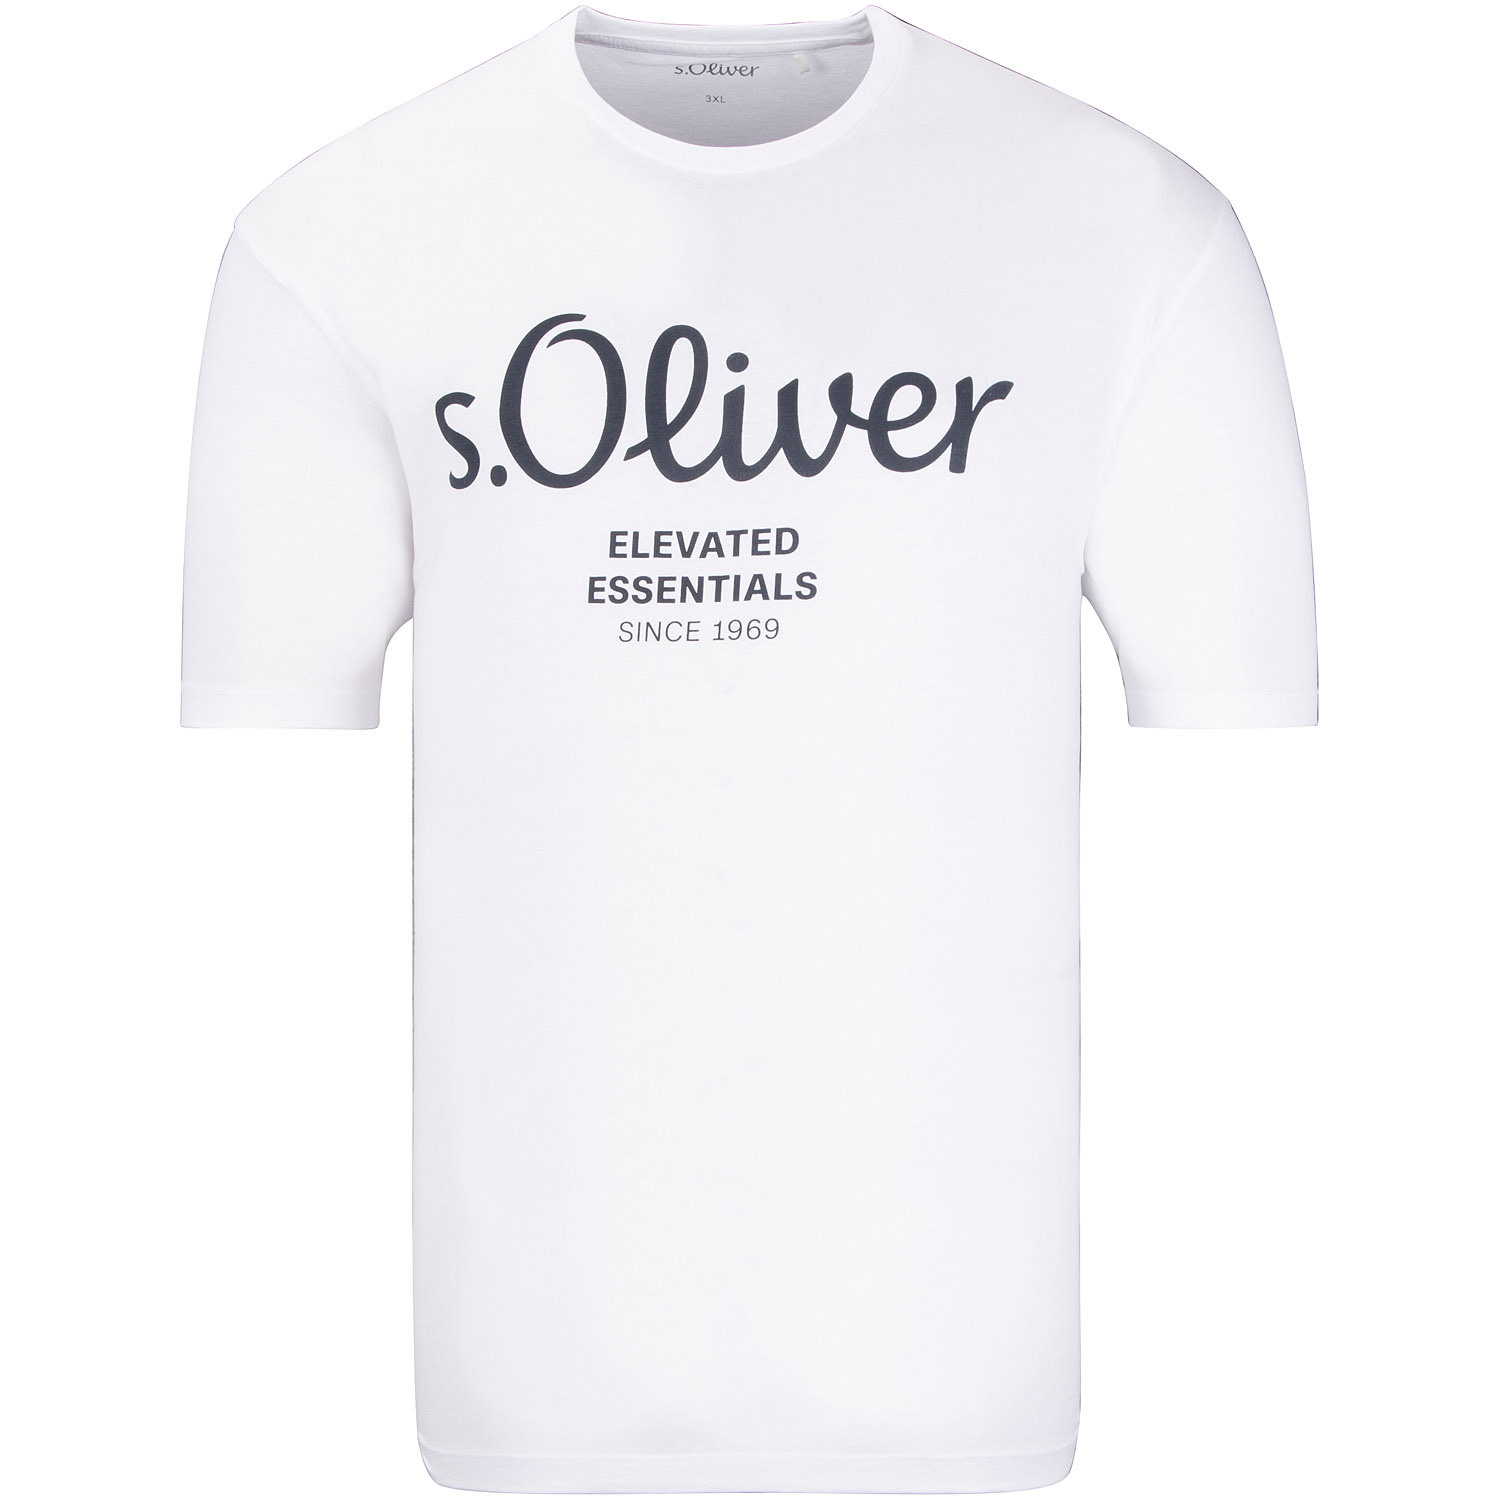 S.OLIVER T-Shirt weiß Herrenmode Übergrößen kaufen in